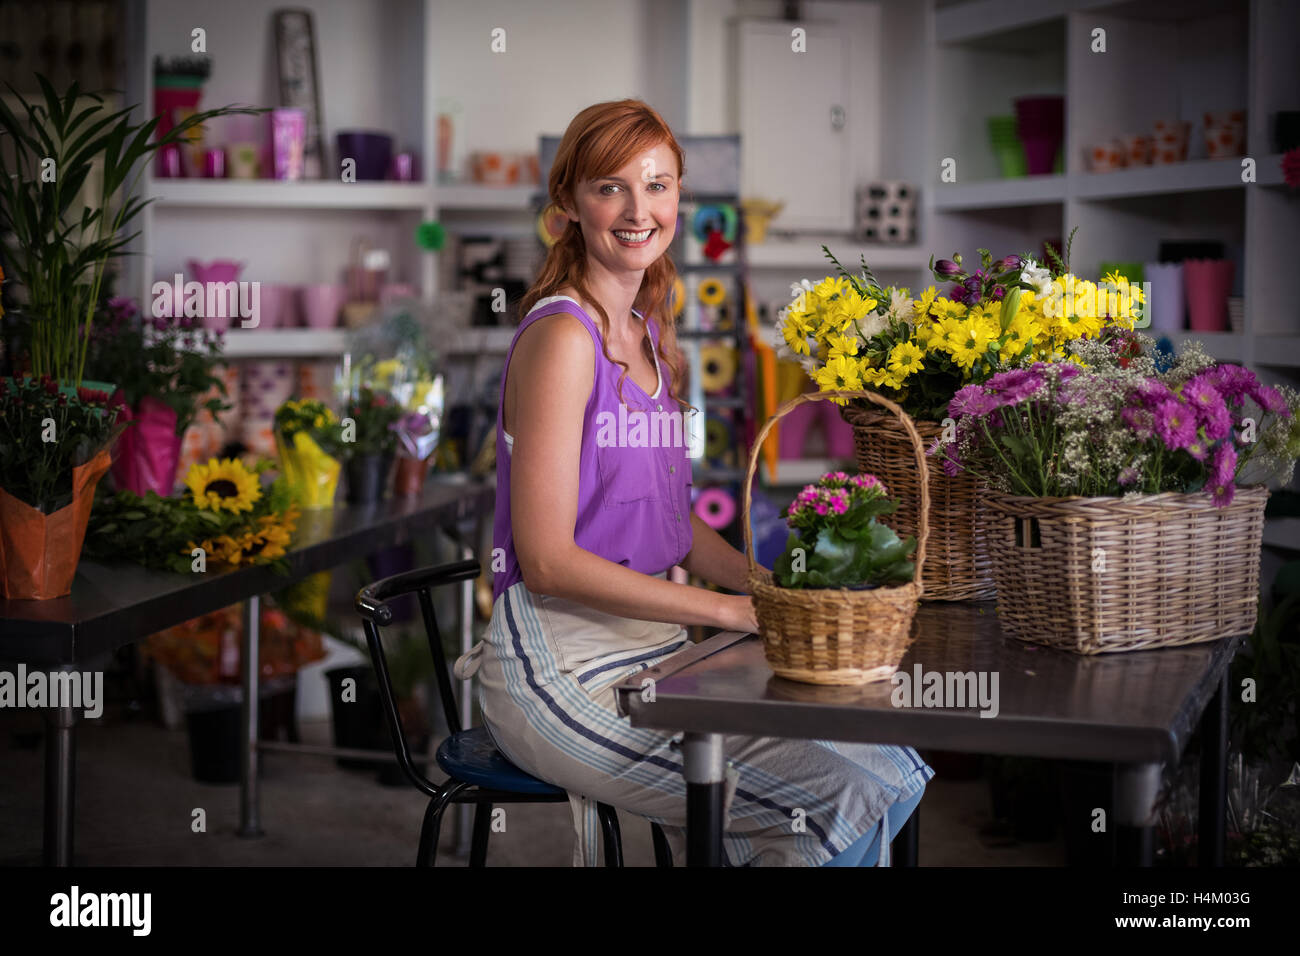 Fleuriste femme assise avec panier de fleurs Banque D'Images